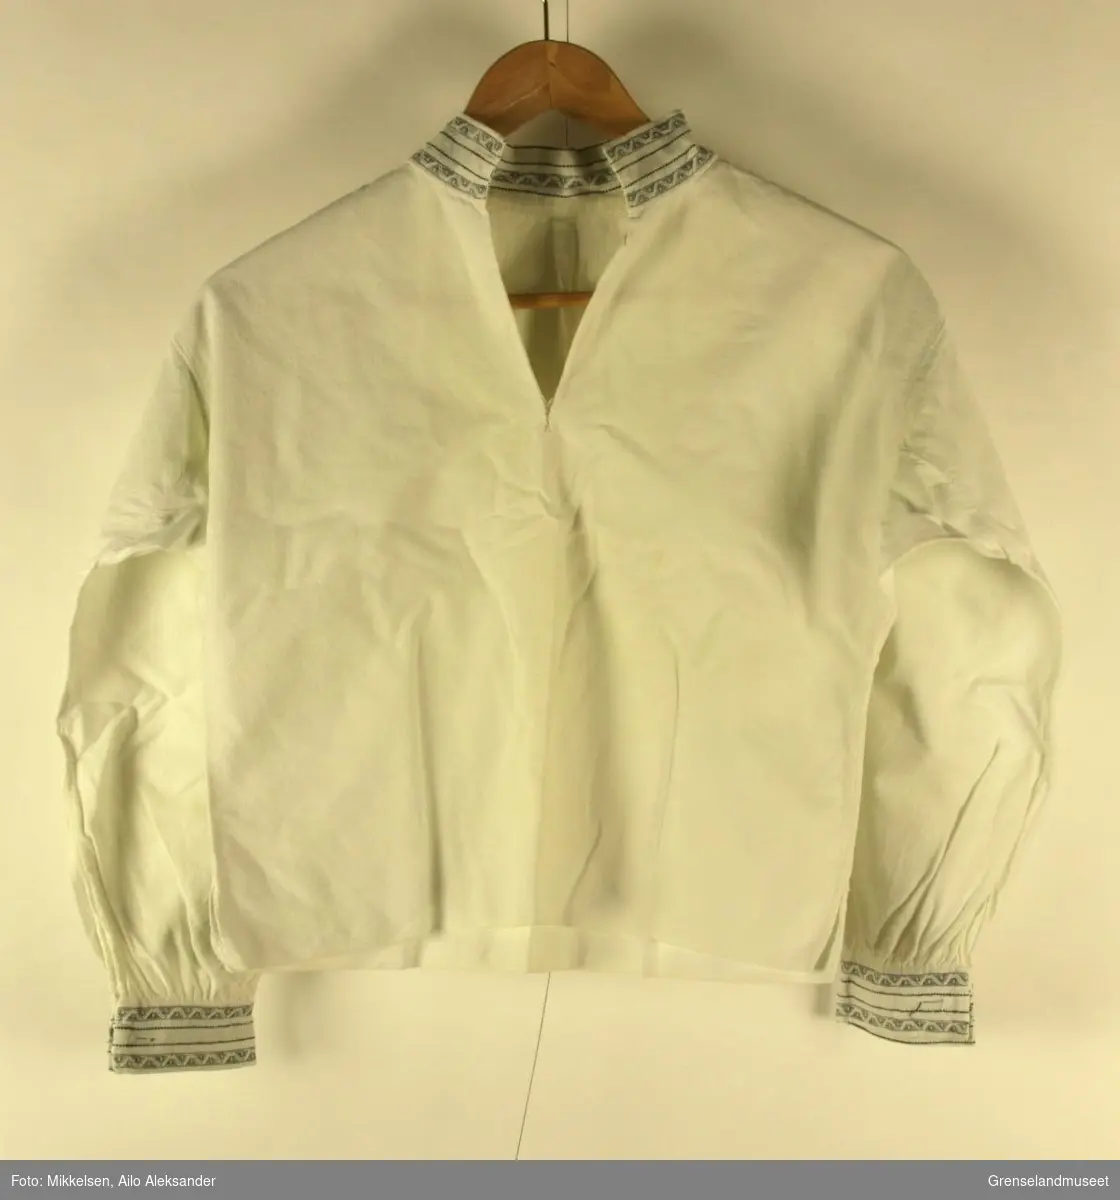 Gjenstandene er en hvit skjorte som har vært i bruk av Bjørnevatn Pikekor. Kragen og ermene er dekorert med sydd mønstersøm i hvitt og svart.